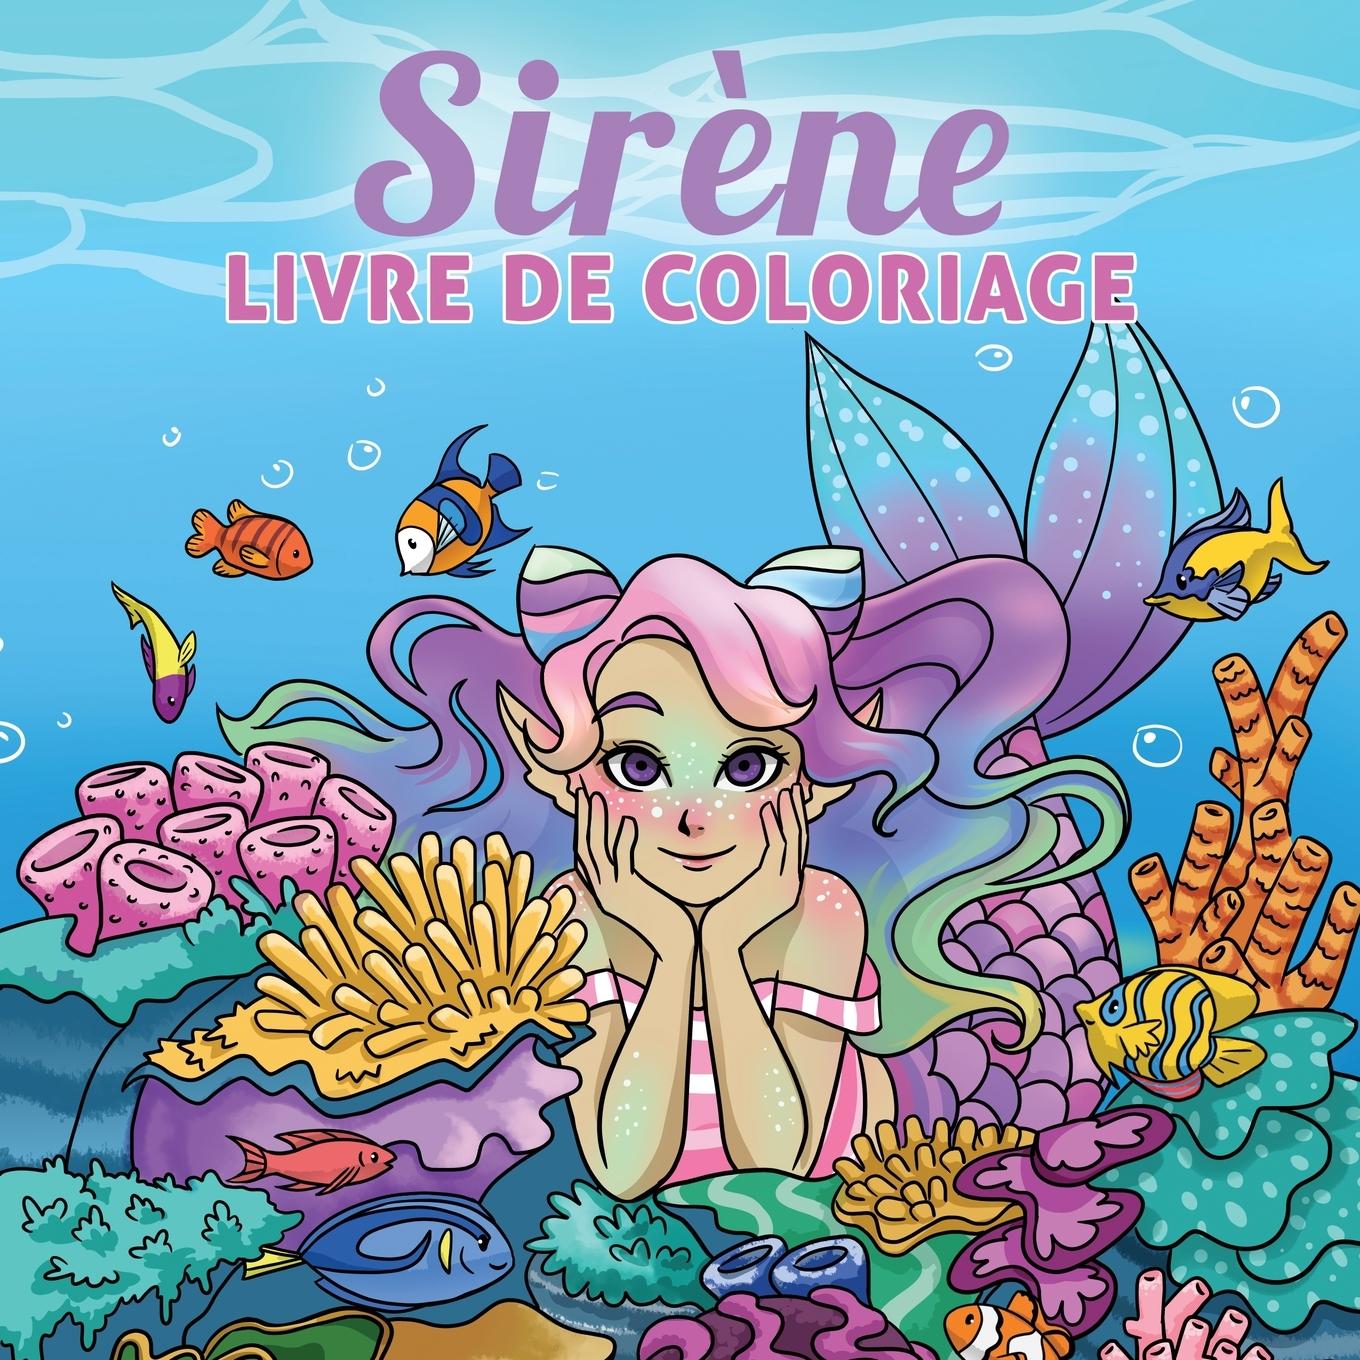 Книга Sirene livre de coloriage 